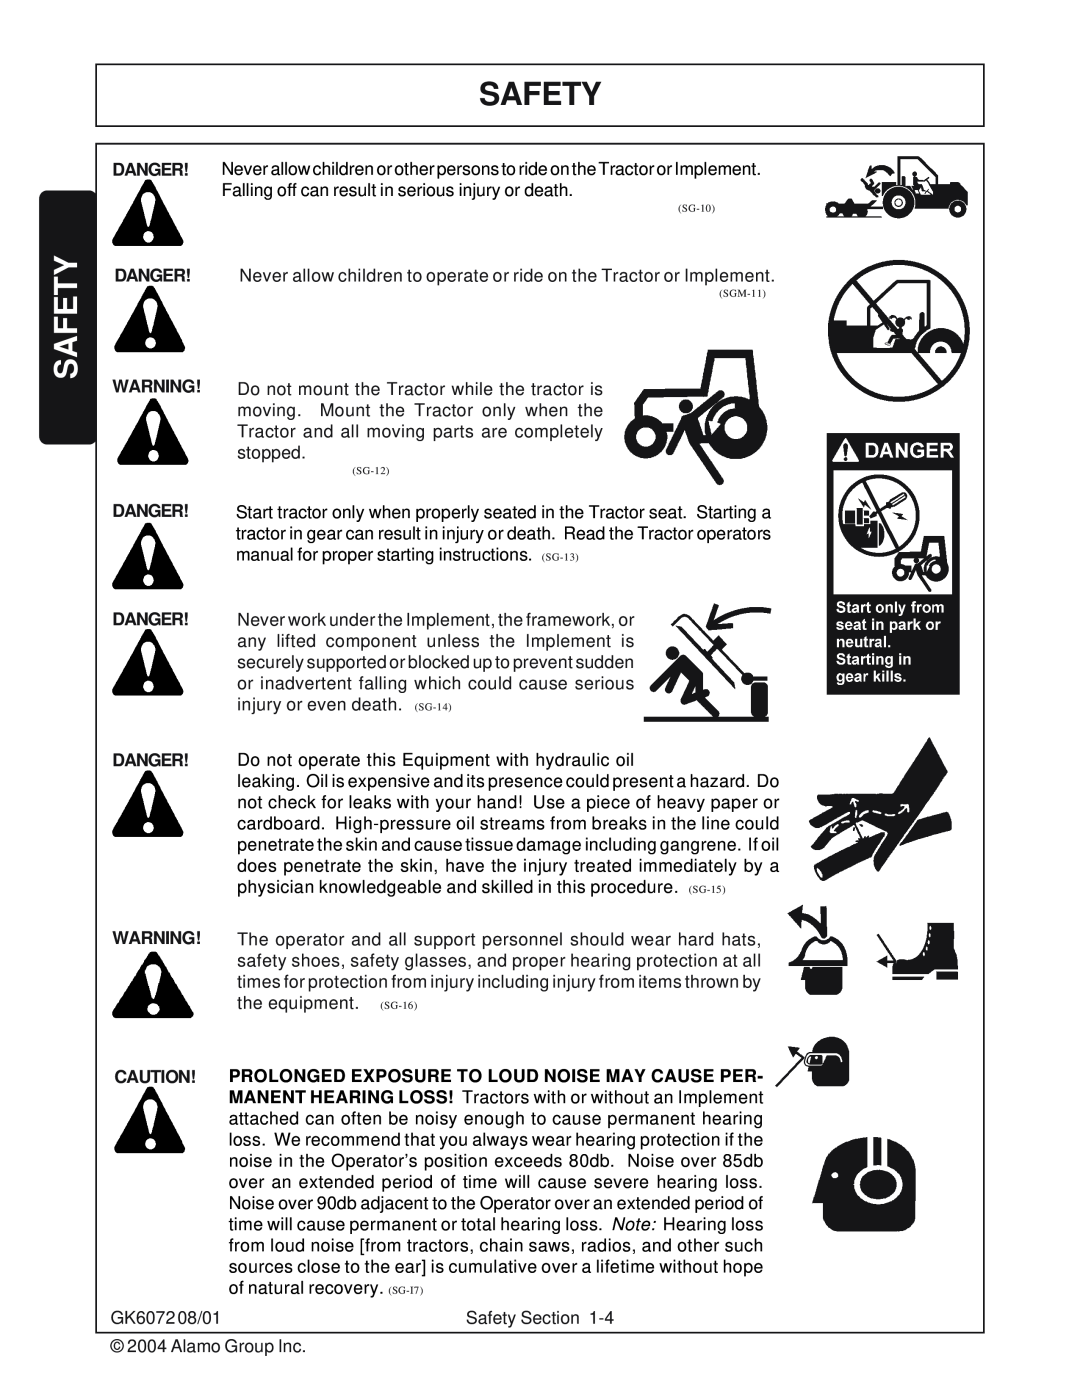 Rhino Mounts GK6072 manual Safety, Danger 